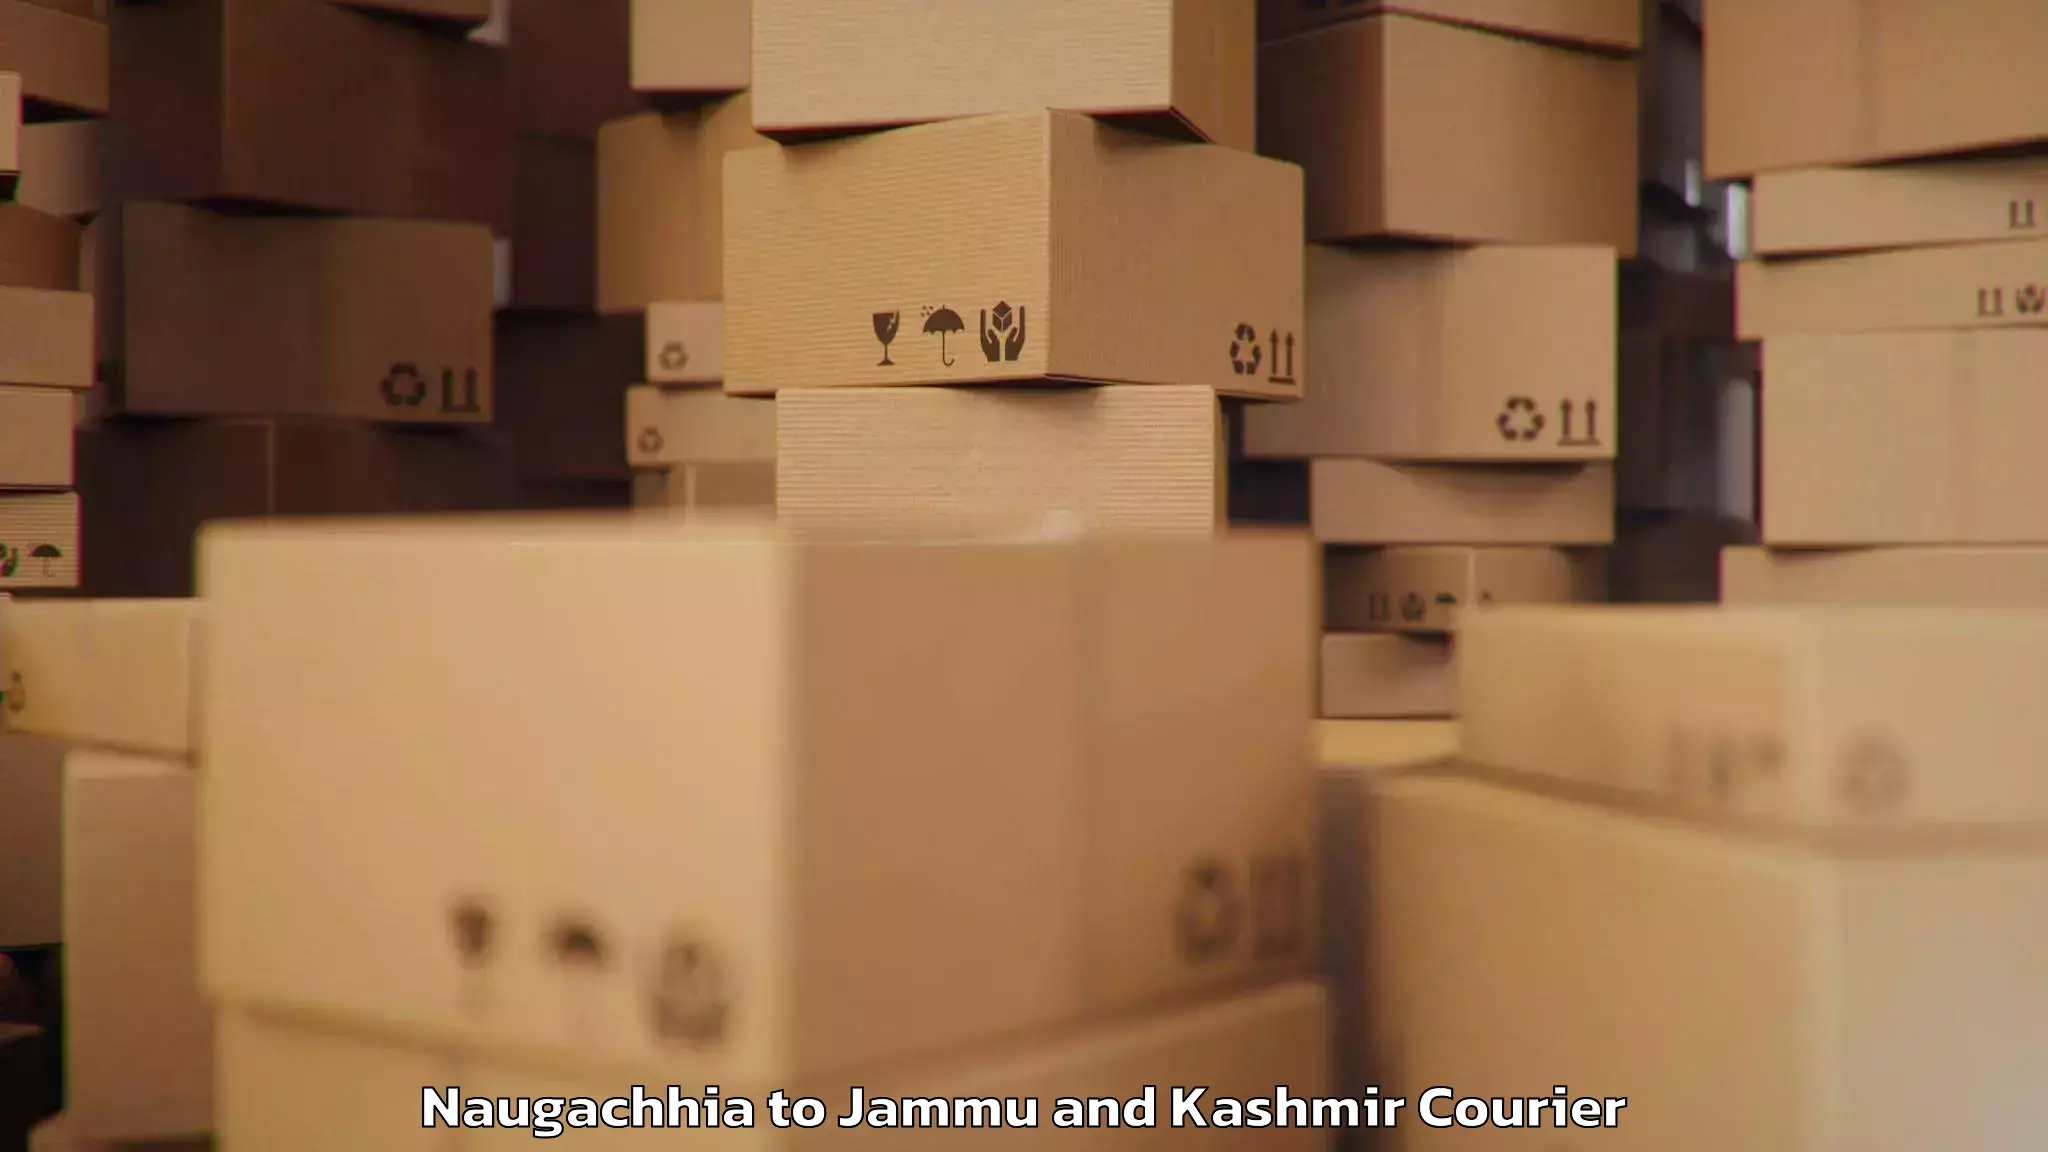 Luggage transport solutions Naugachhia to Rajouri